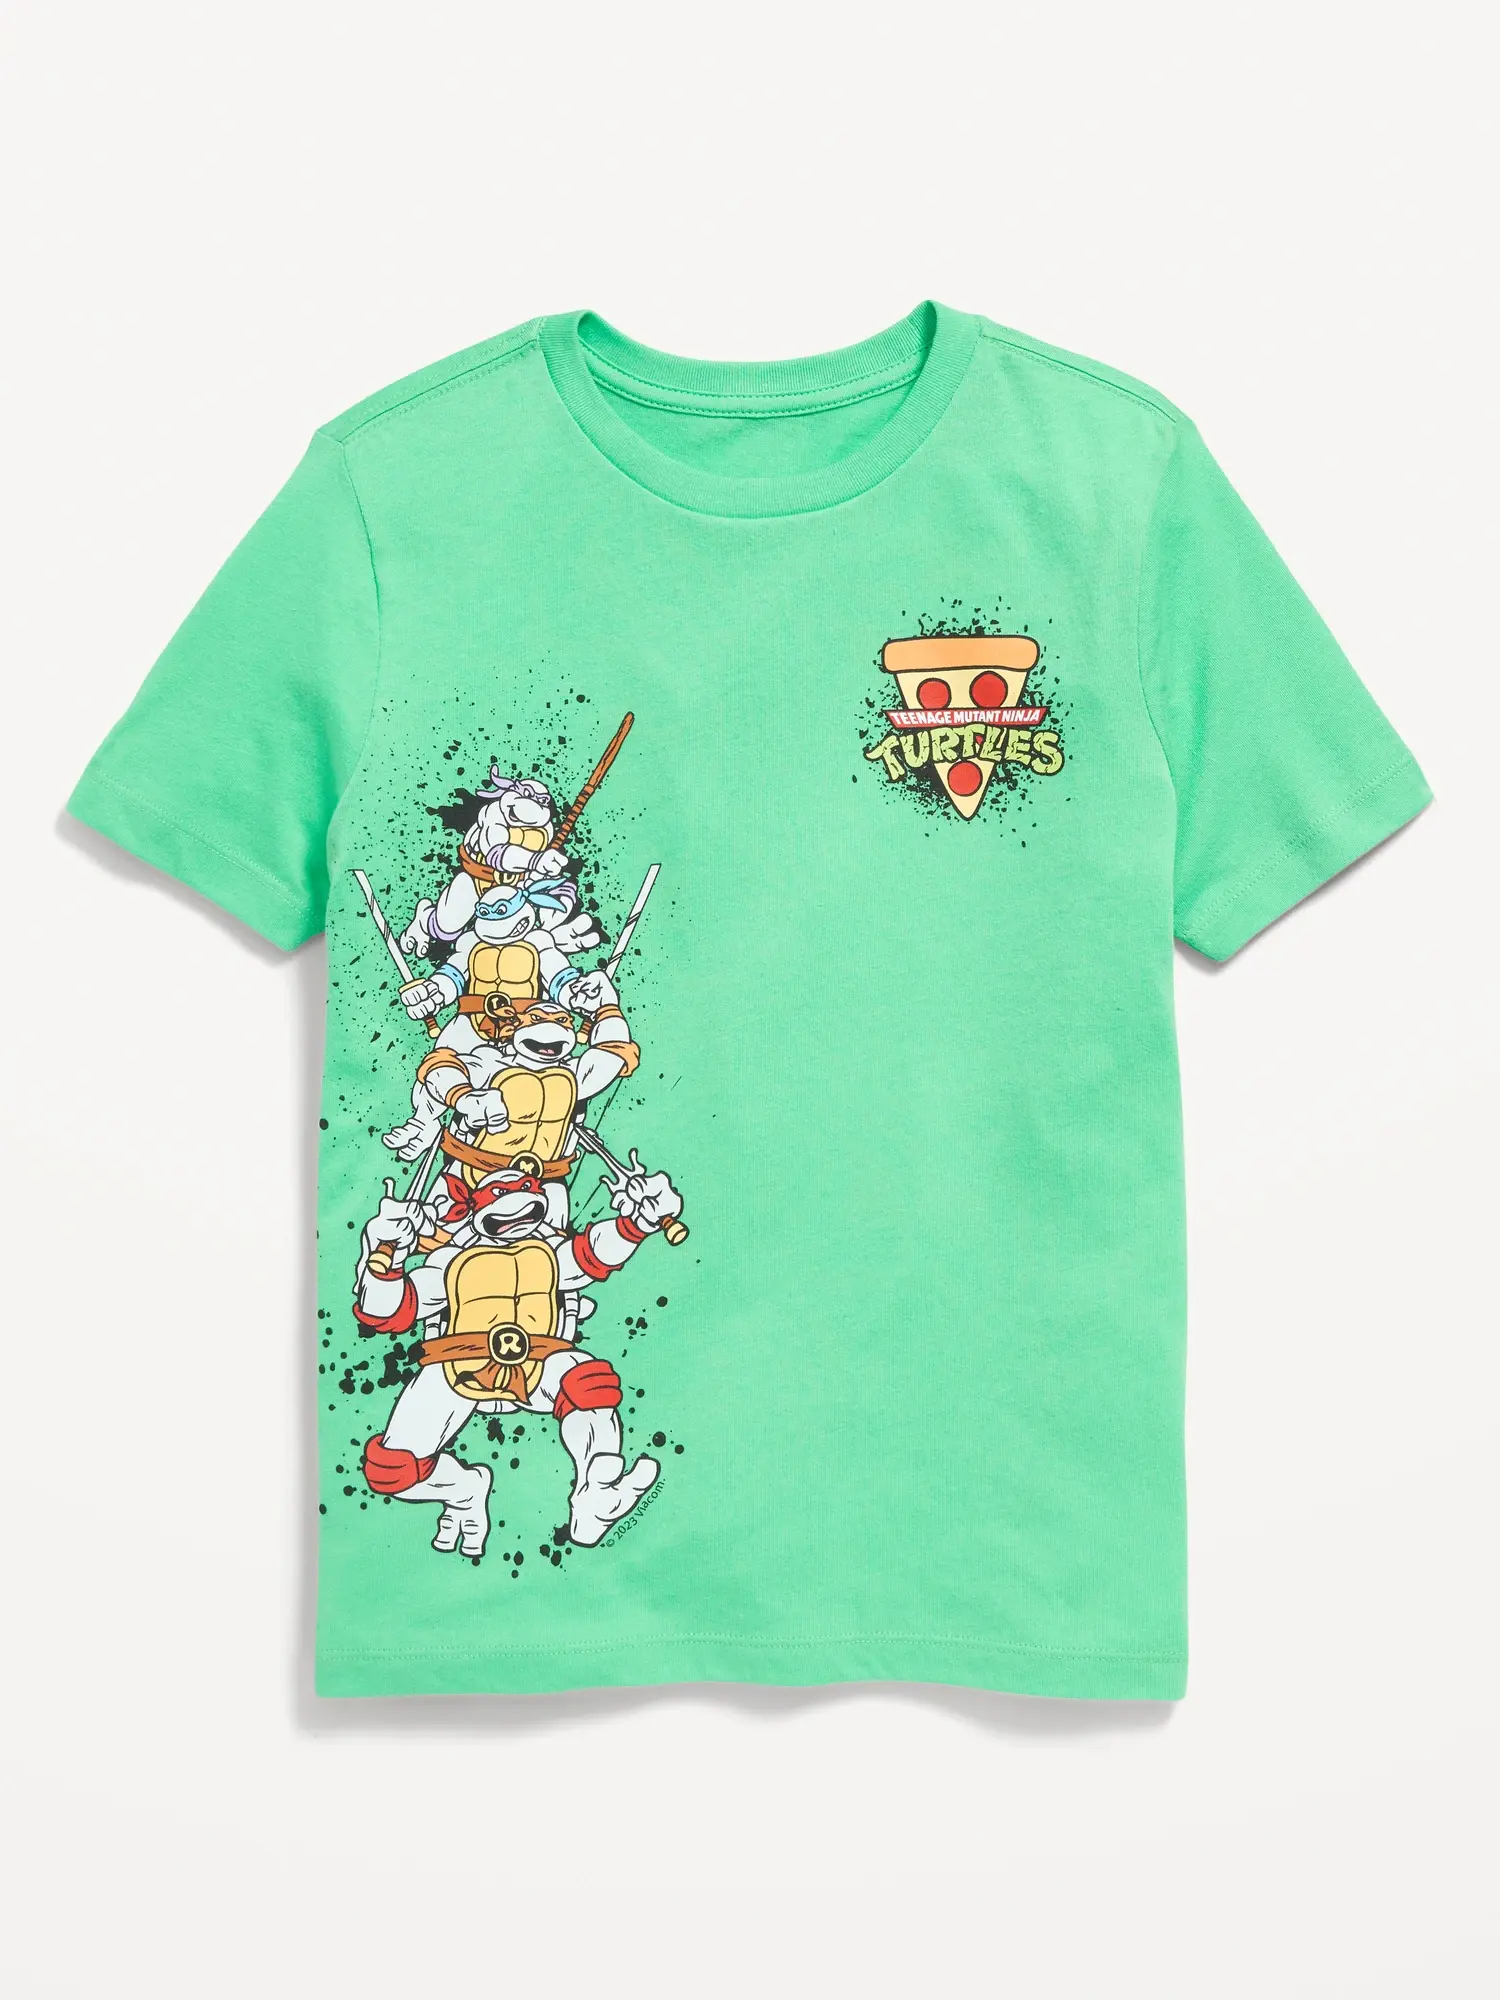 Old Navy Gender-Neutral Teenage Mutant Ninja Turtles™ T-Shirt for Kids green. 1